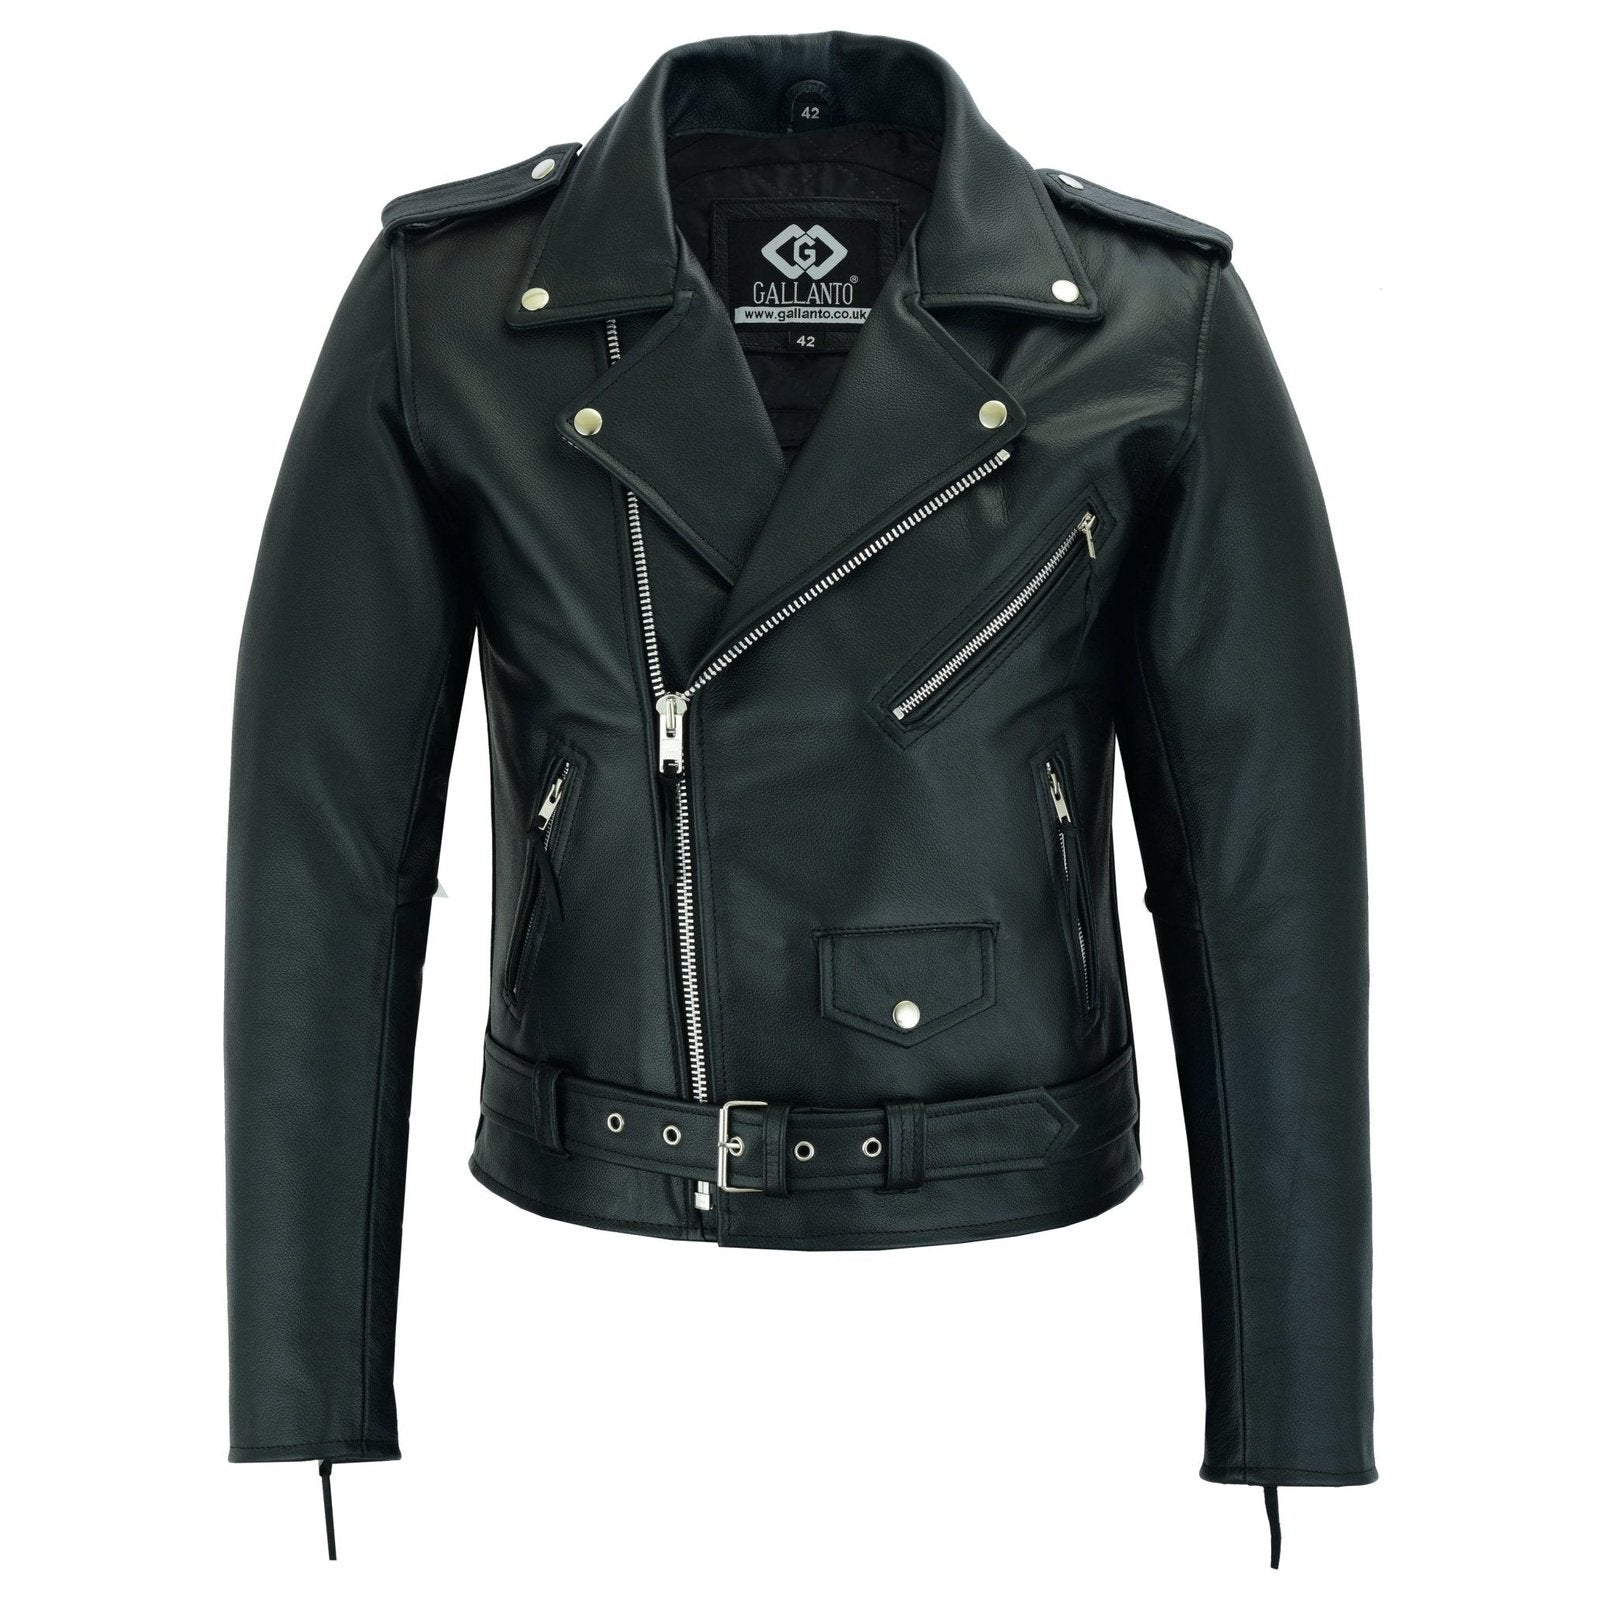 Mens leather jackets uk, women motorcycle jacket, pant, leather gloves